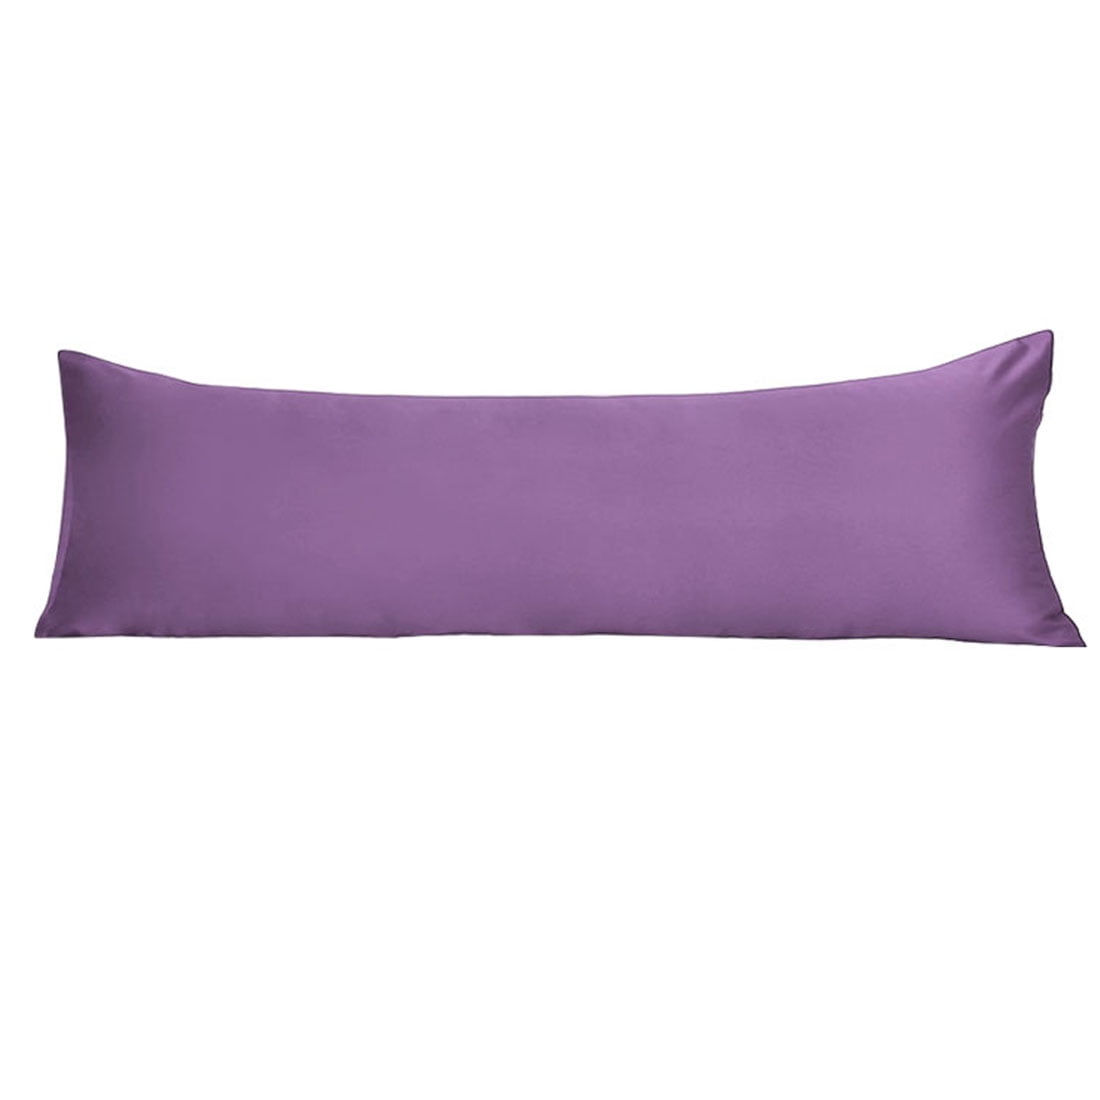 Unique Bargains 1 Piece Silky Satin Body Pillow Cover Cases Purple 20 ...